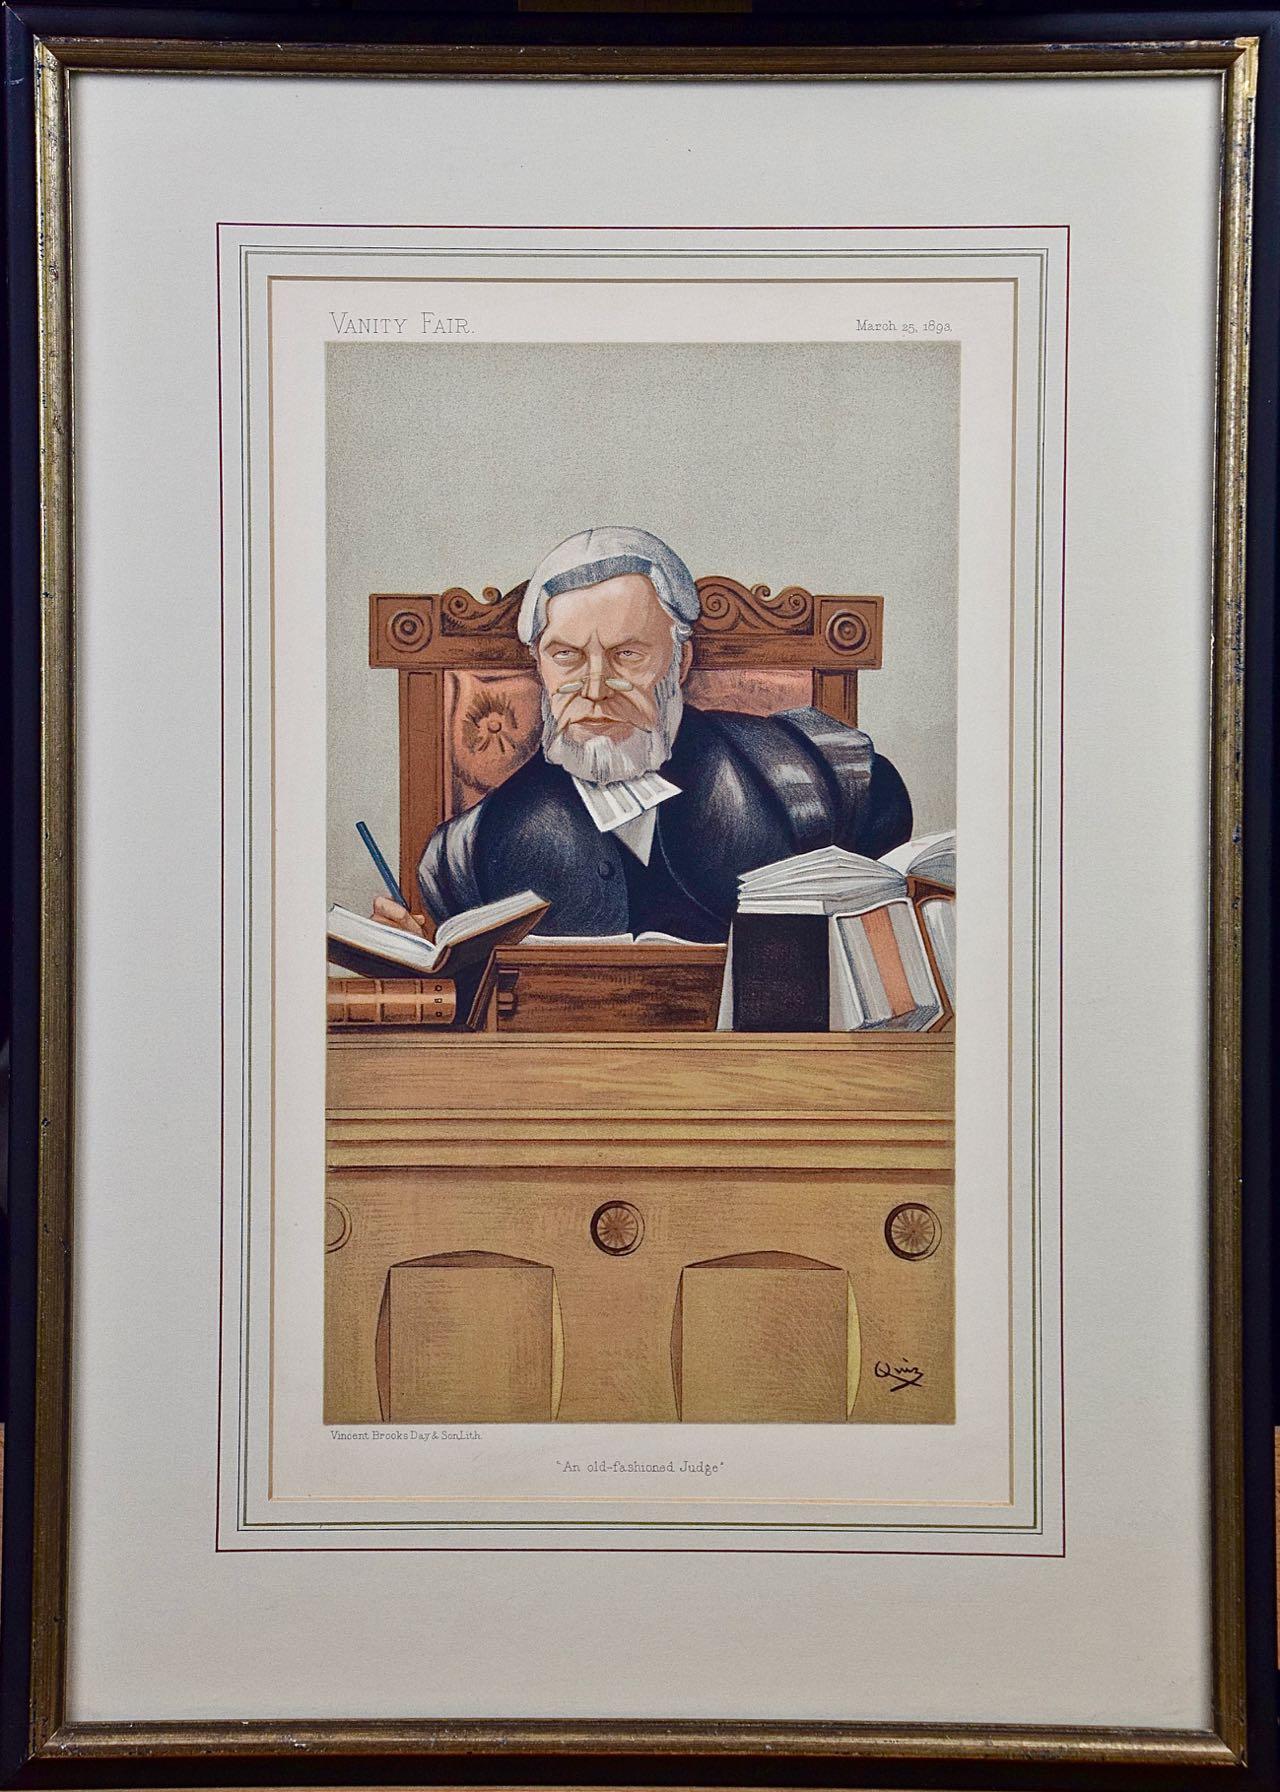 Waschtisch-Karikatur aus dem 19. Jahrhundert, „Ein alter, modischer Richter“, Henry Lopes